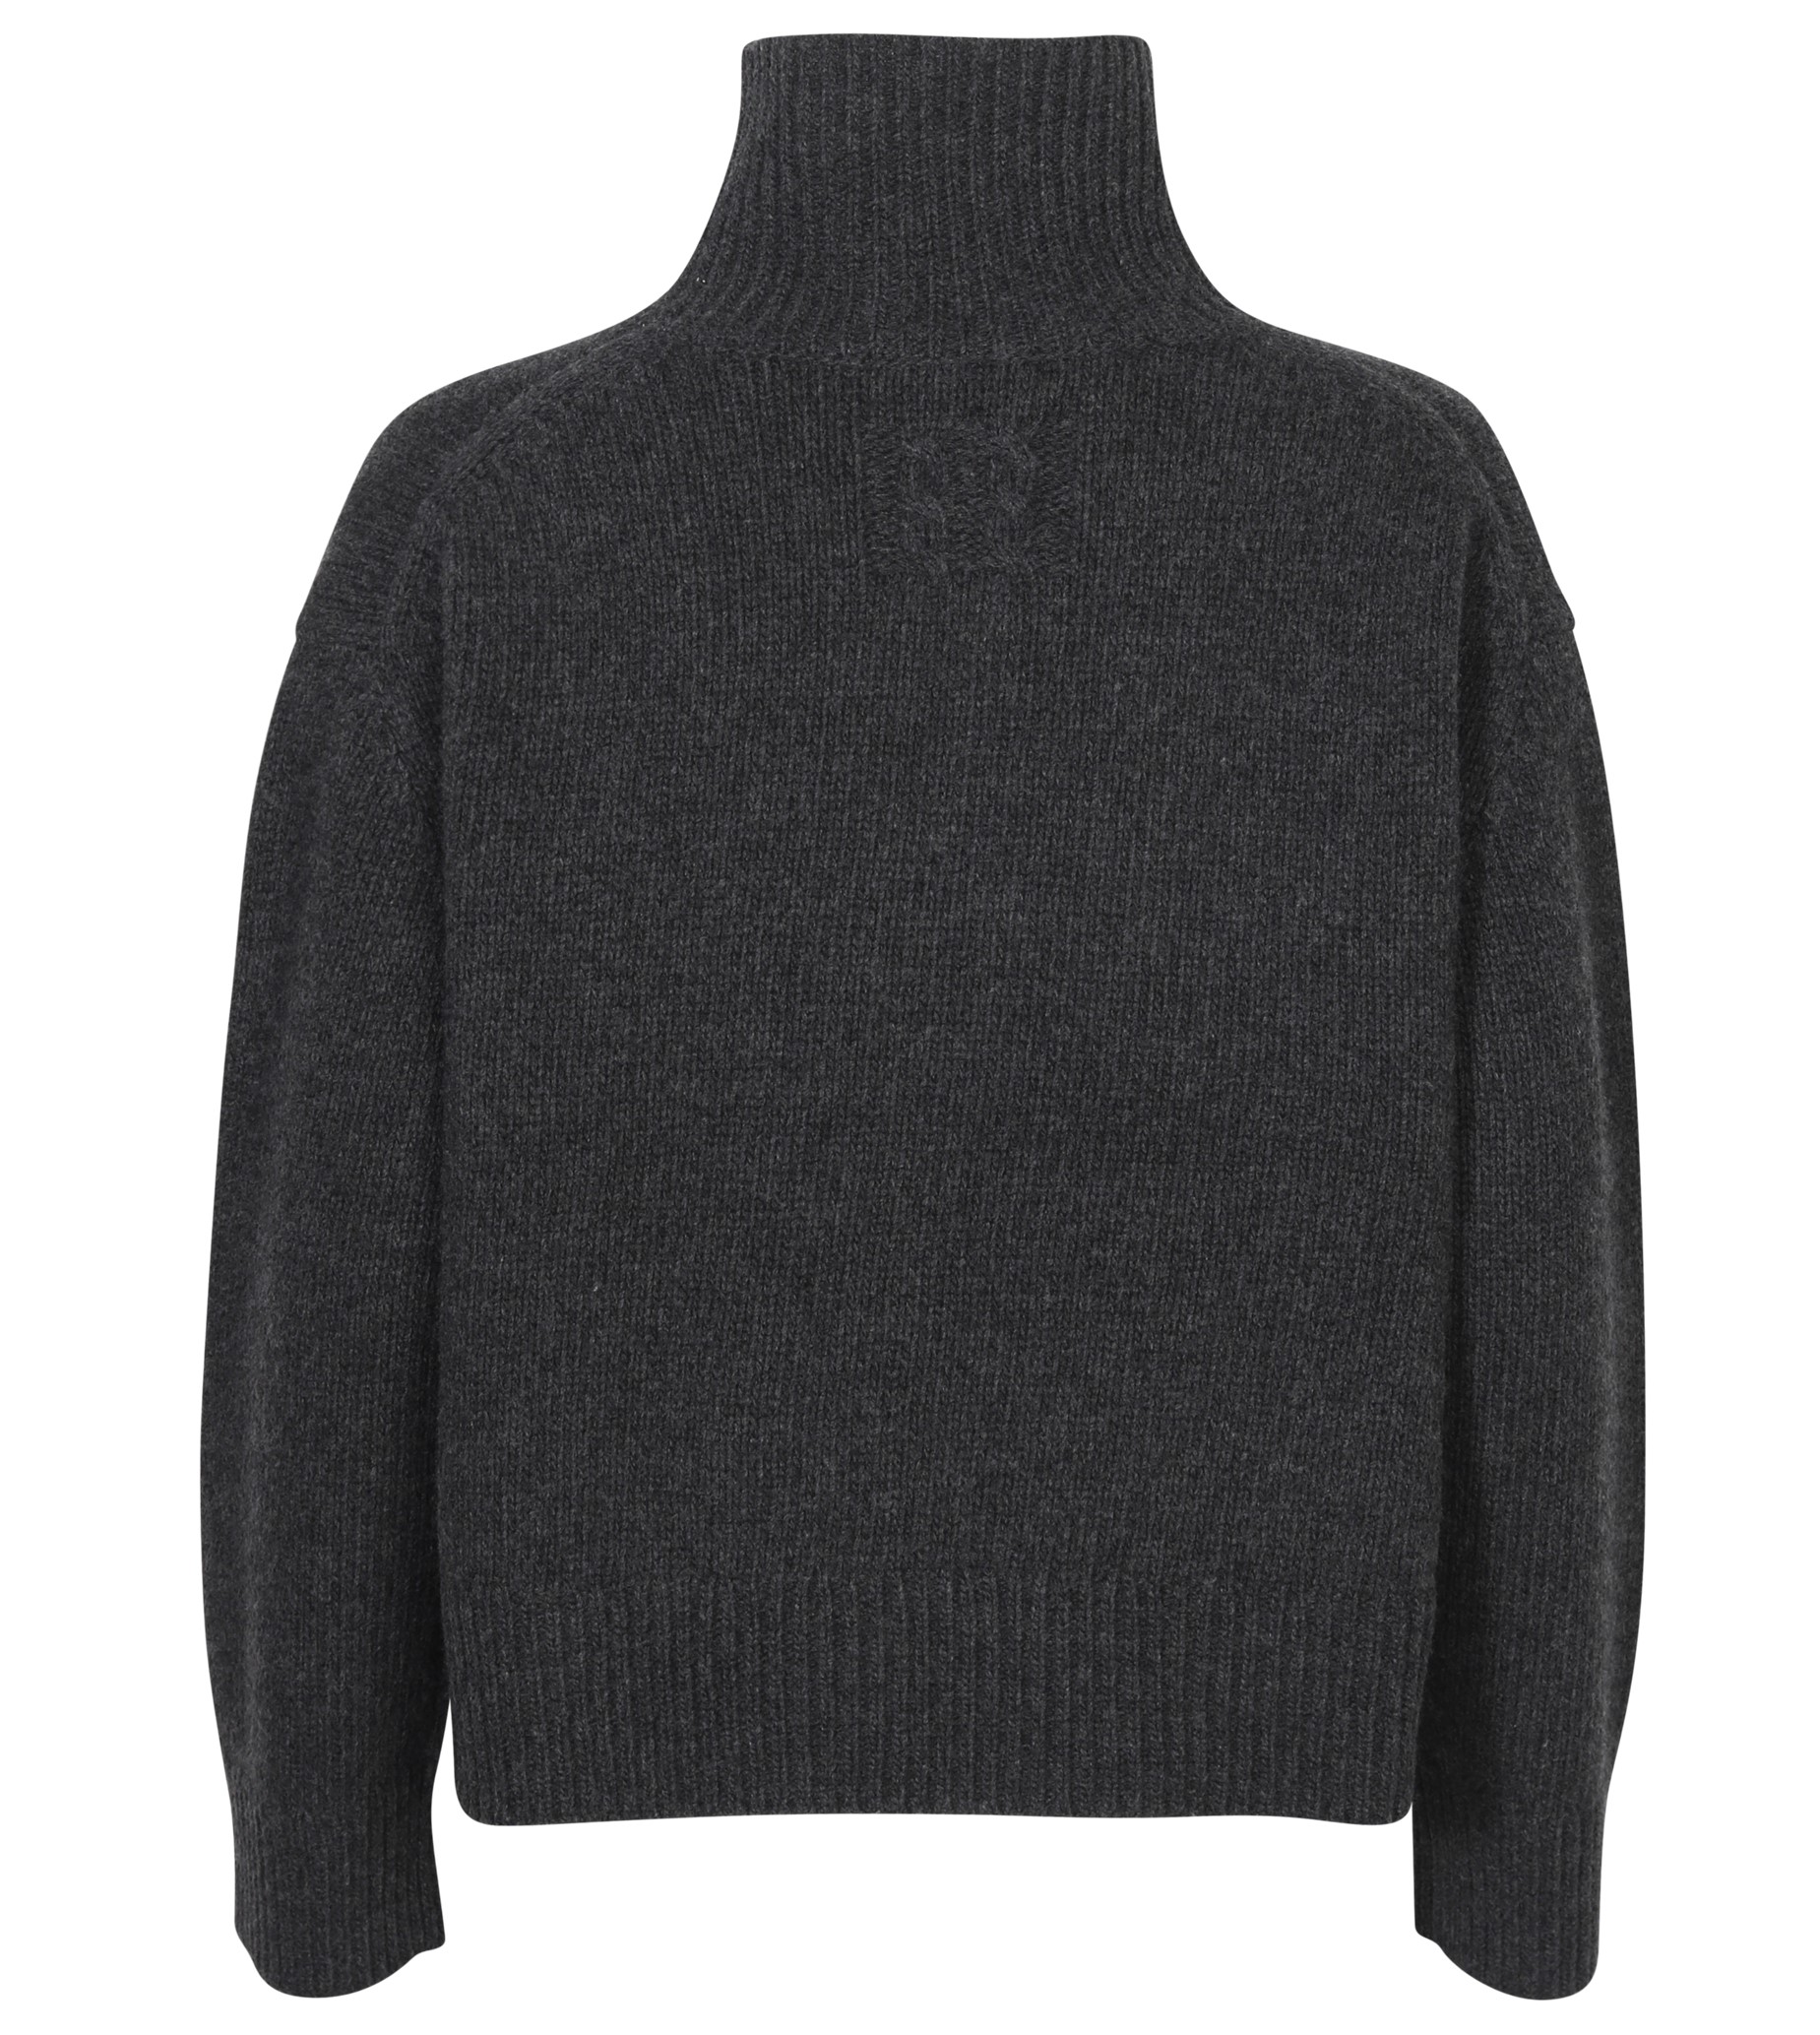 NILI LOTAN Omaira Knit Turtleneck Sweater in Dark Charcoal Melange M